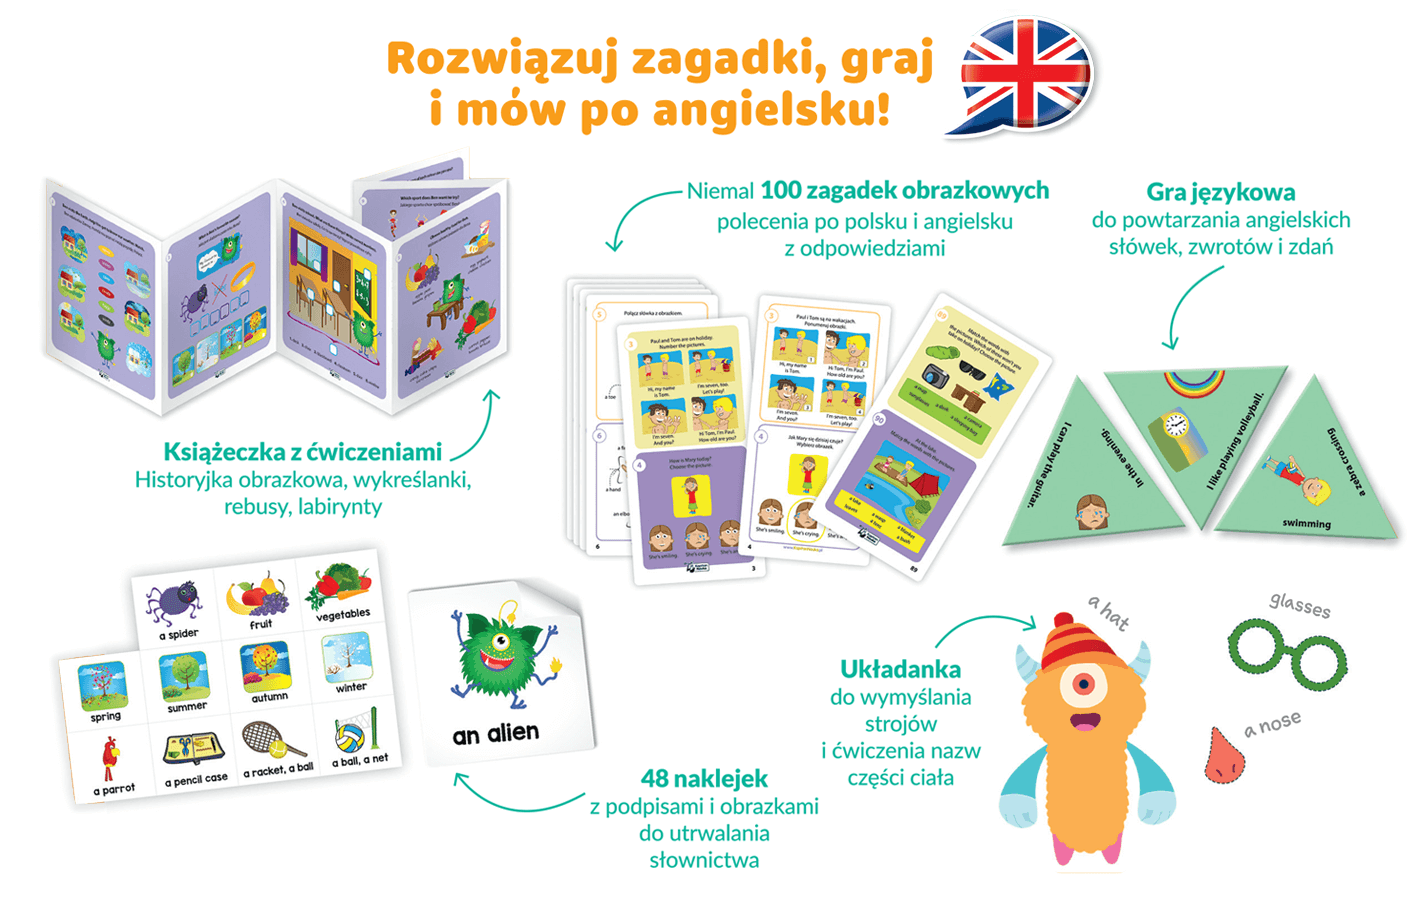 Angielski dla ucznia (6–9 lat) - zestaw pomysłowych i rozwijających zabaw